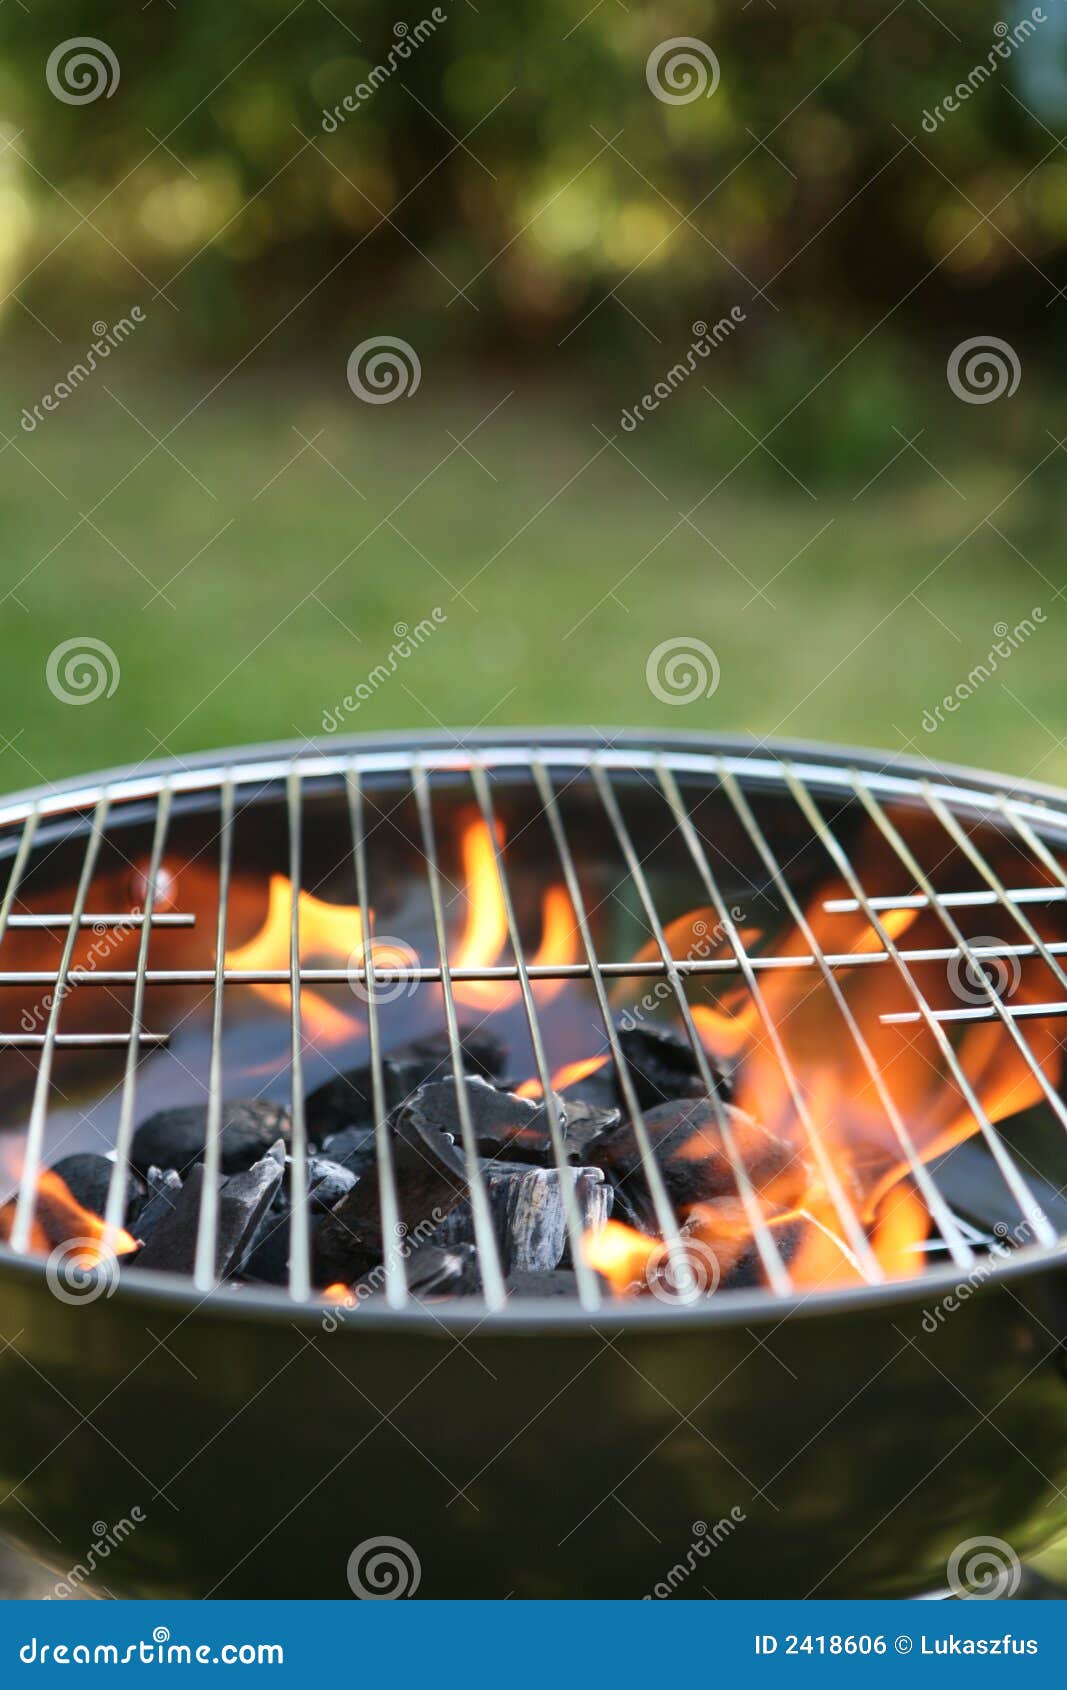 backyard barbecue grill 2418606 Backyard Barbecue Grill Designs